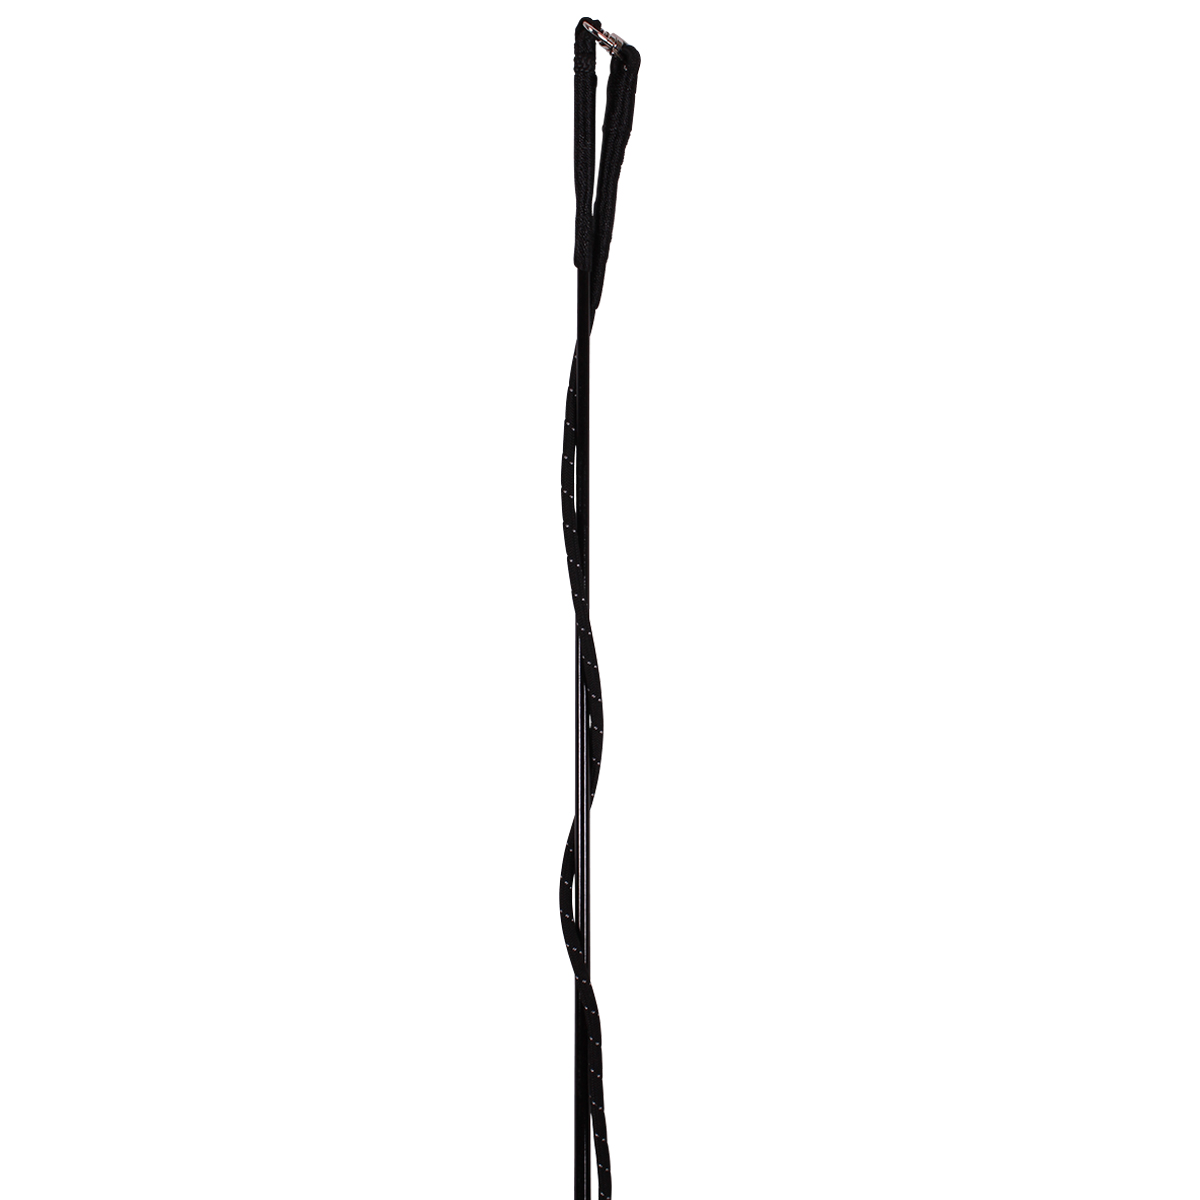 Longeerzweep Lammert Haanstra Coloured, 200 cm in zwart